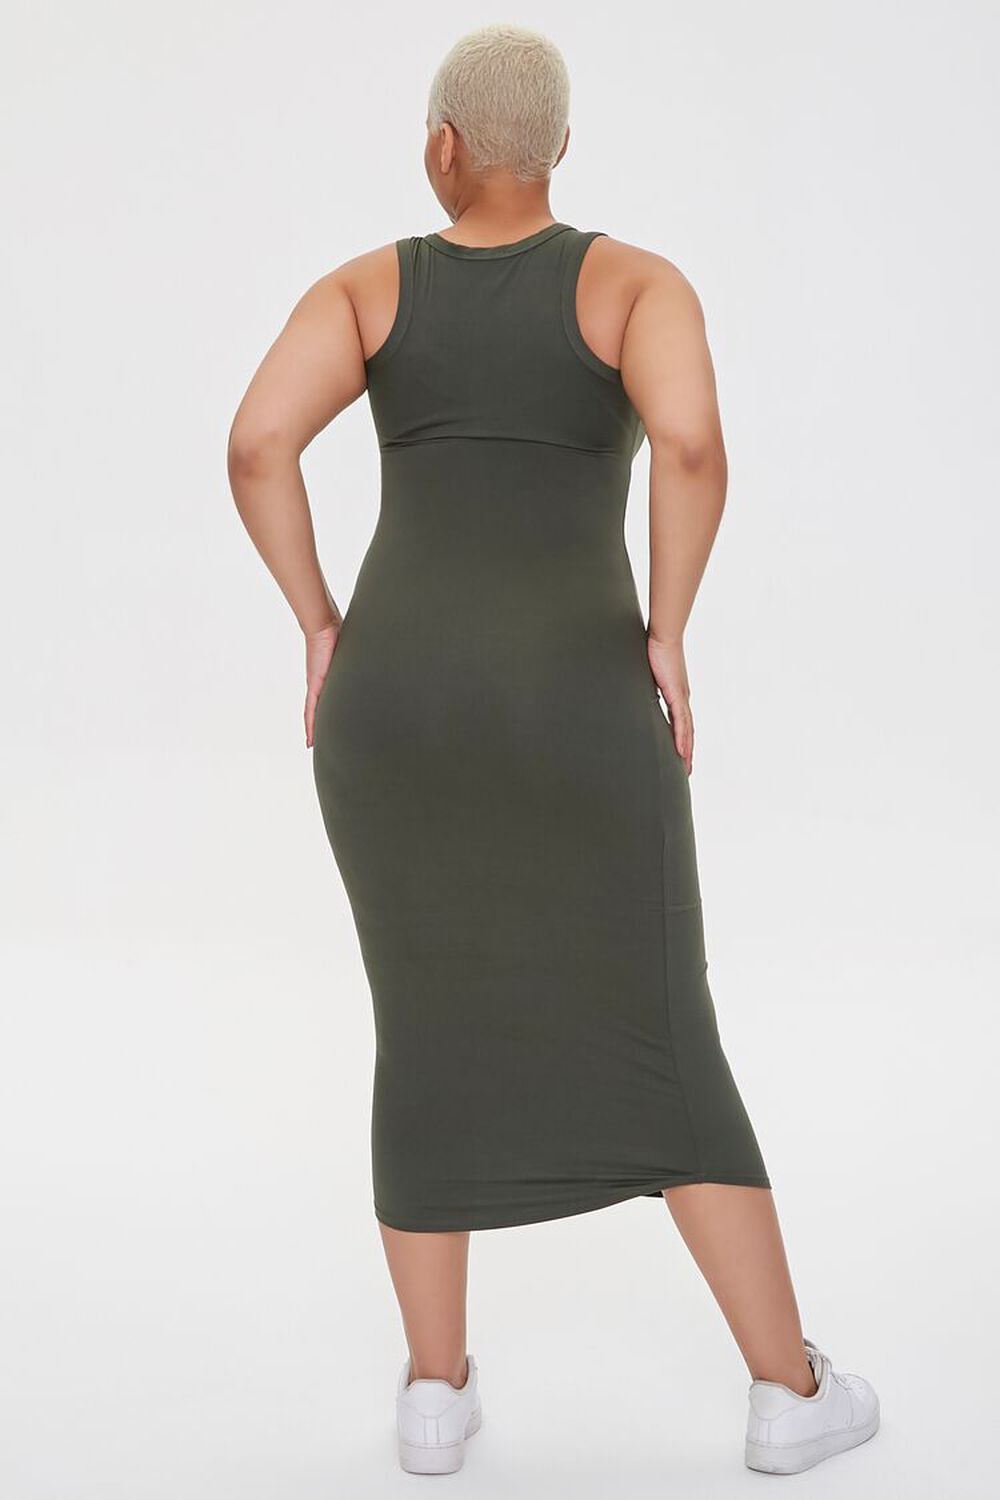 OLIVE Plus Size Tank Midi Dress, image 3